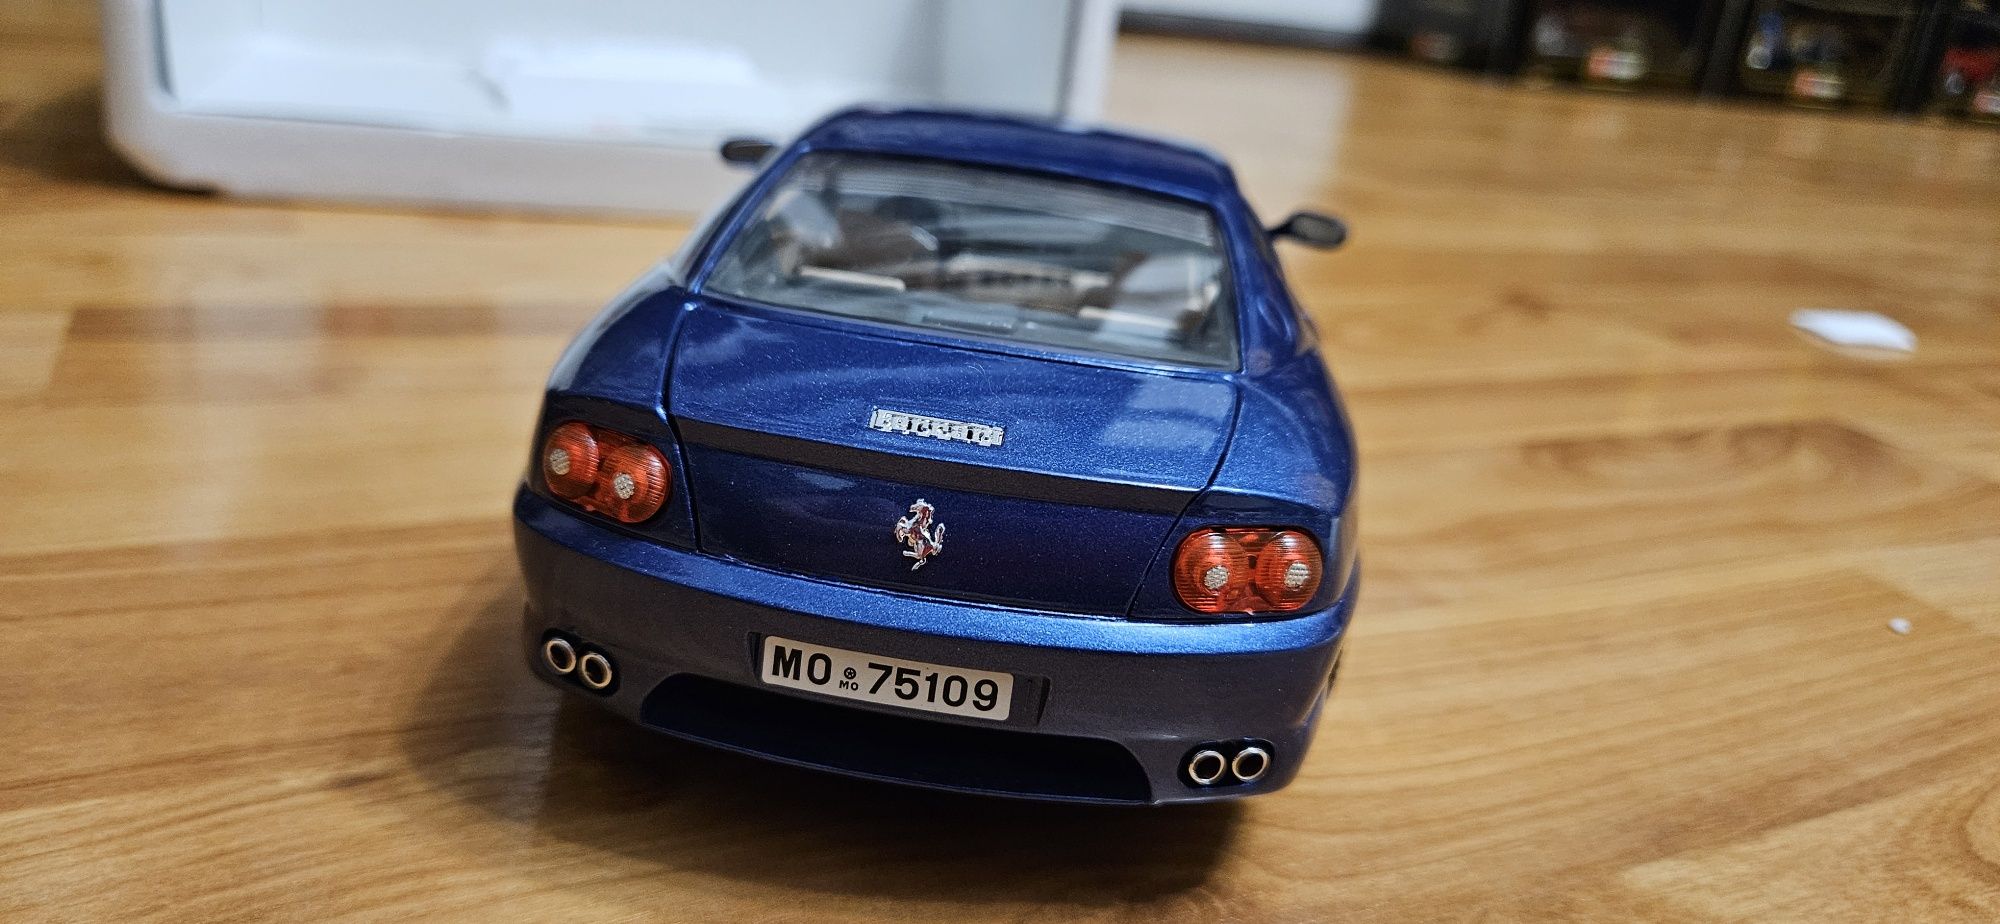 1:18 Burago Ferrari 456 GT